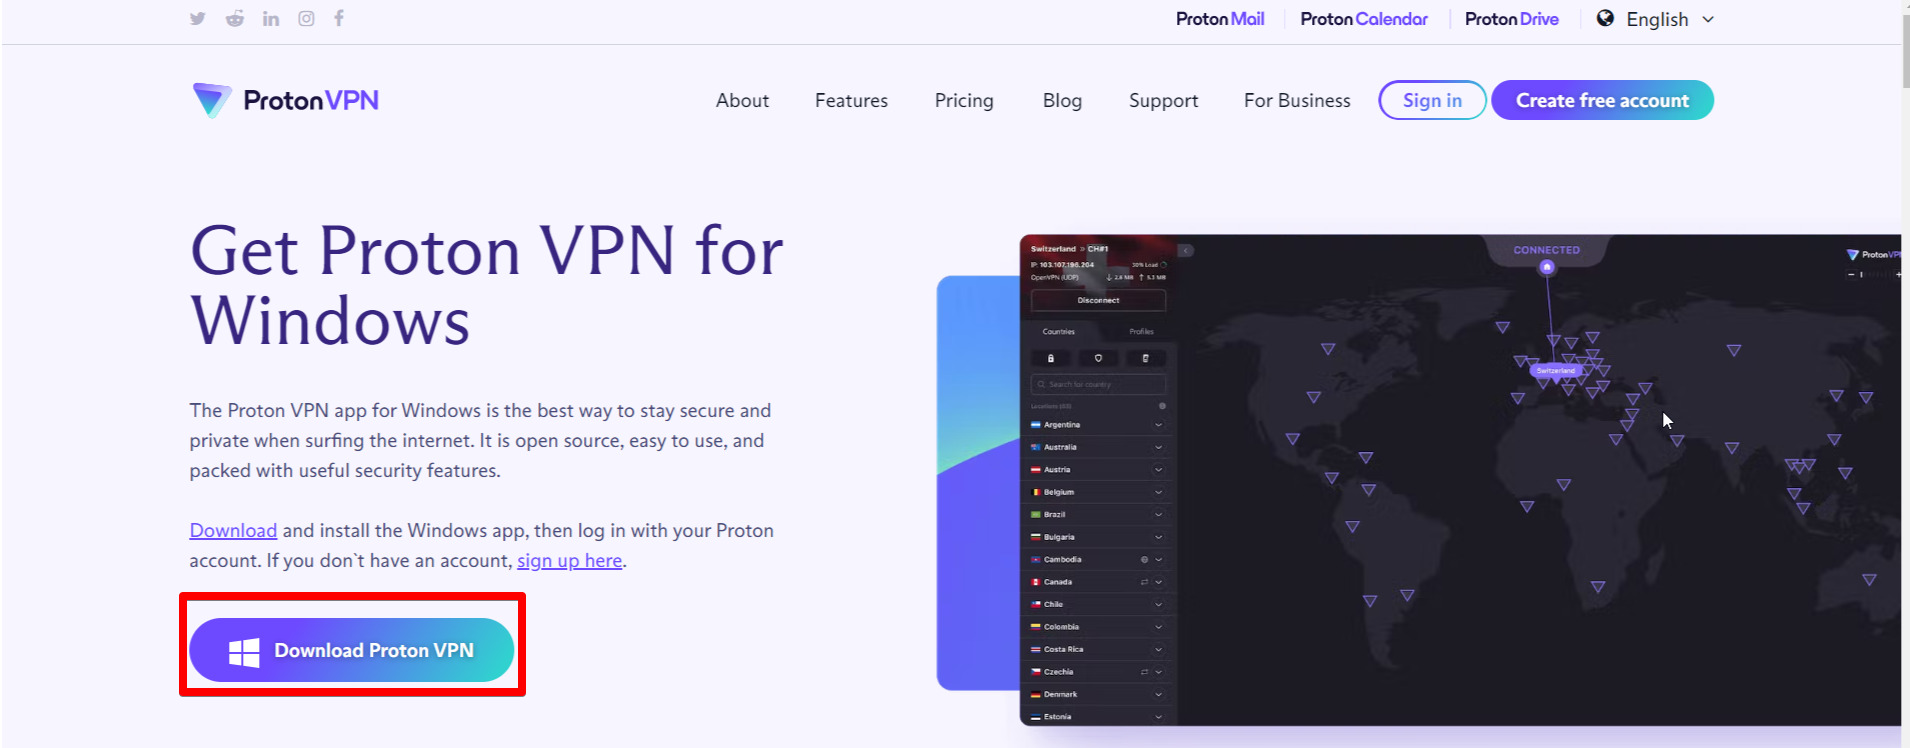 Proton-VPN-download-in-Hong Kong